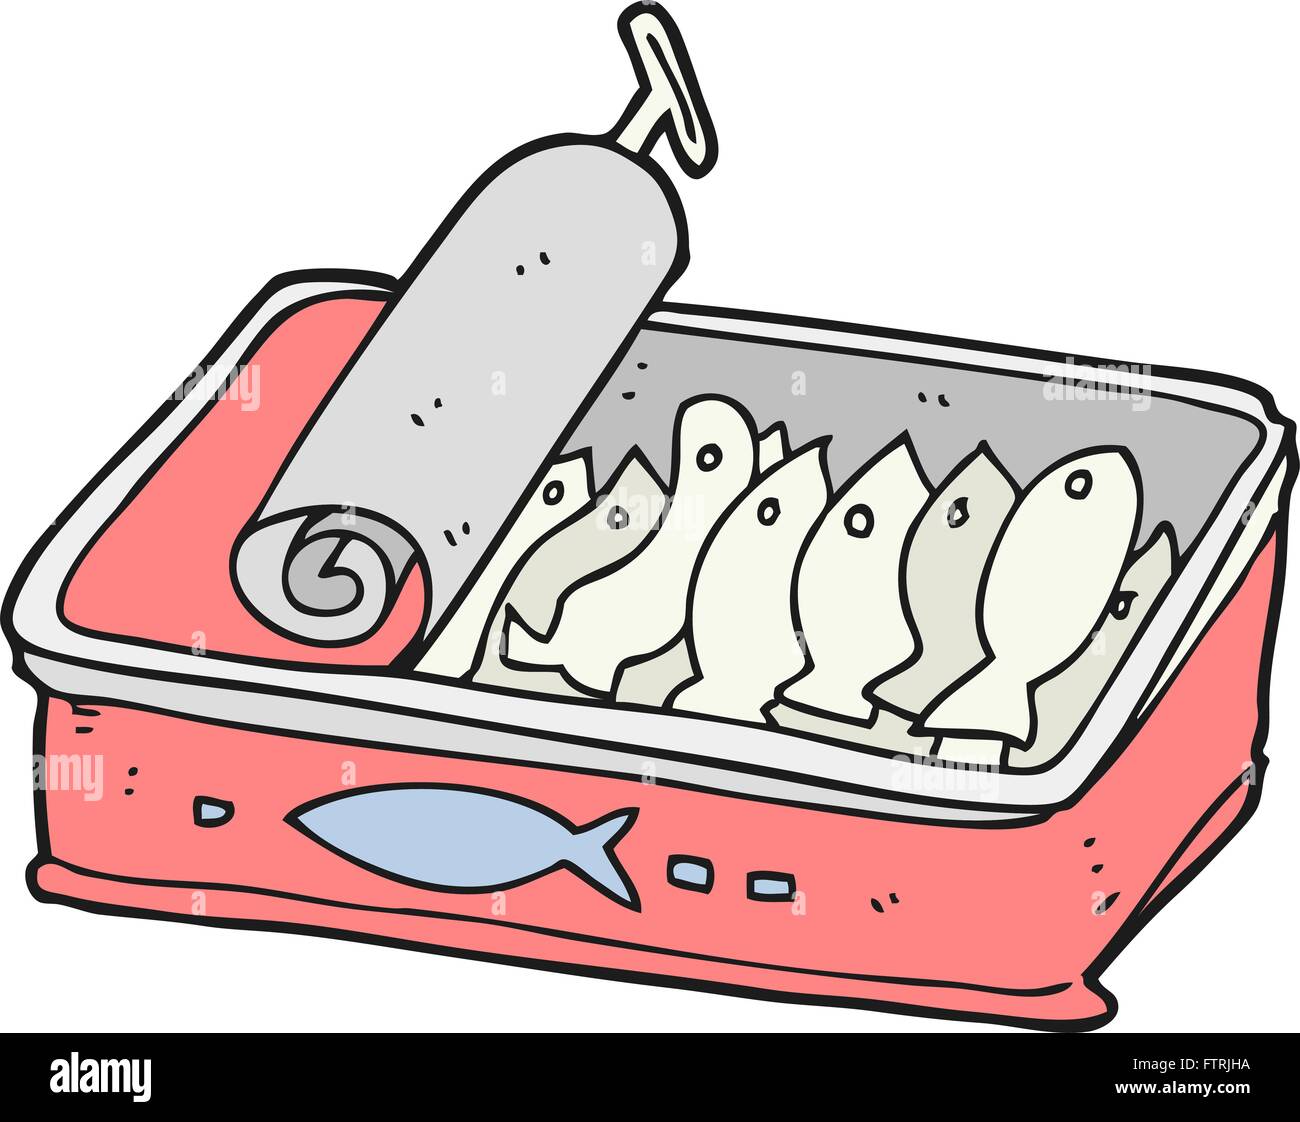 Freehand drawn cartoon peut de sardines Illustration de Vecteur